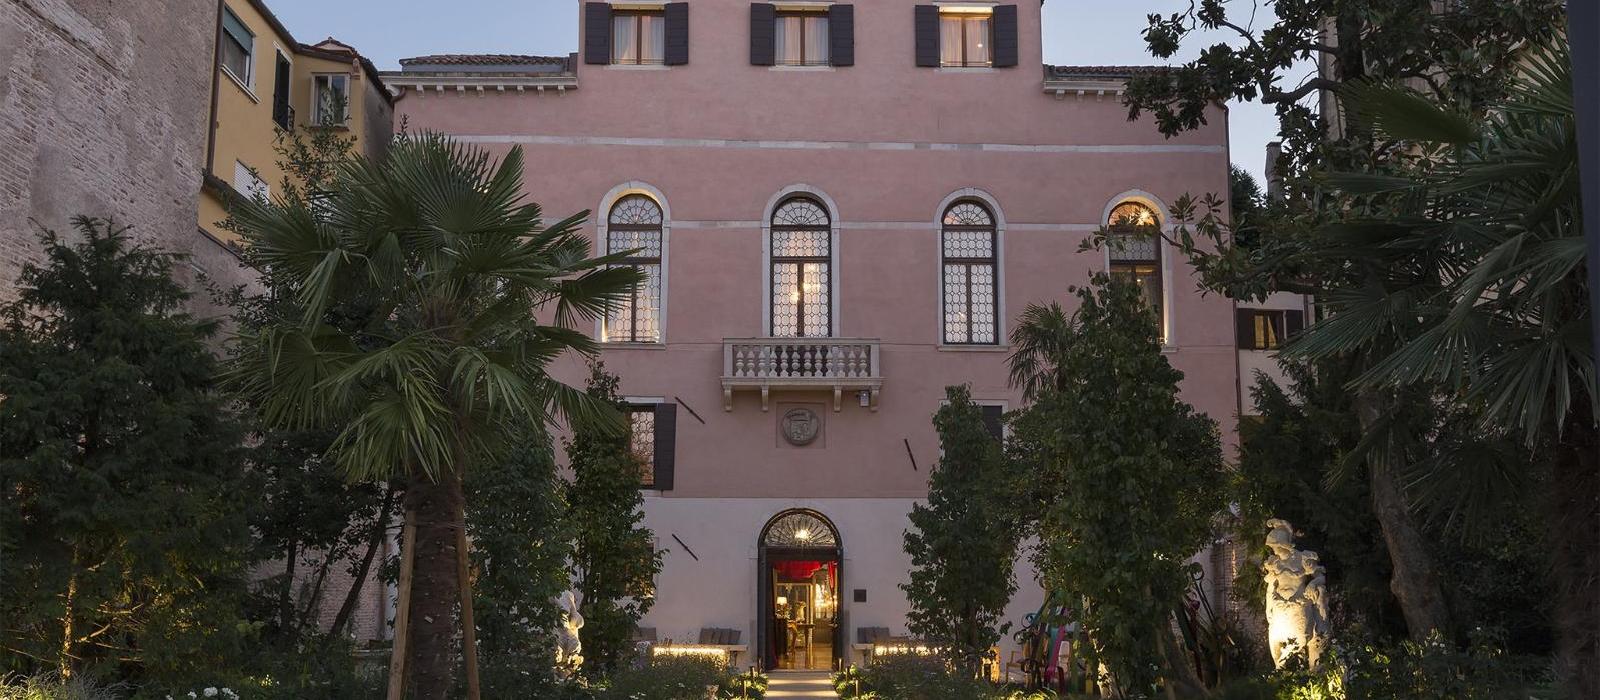 韦纳特宫豪华酒店(Palazzo Venart Luxury Hotel) 图片  www.lhw.cn